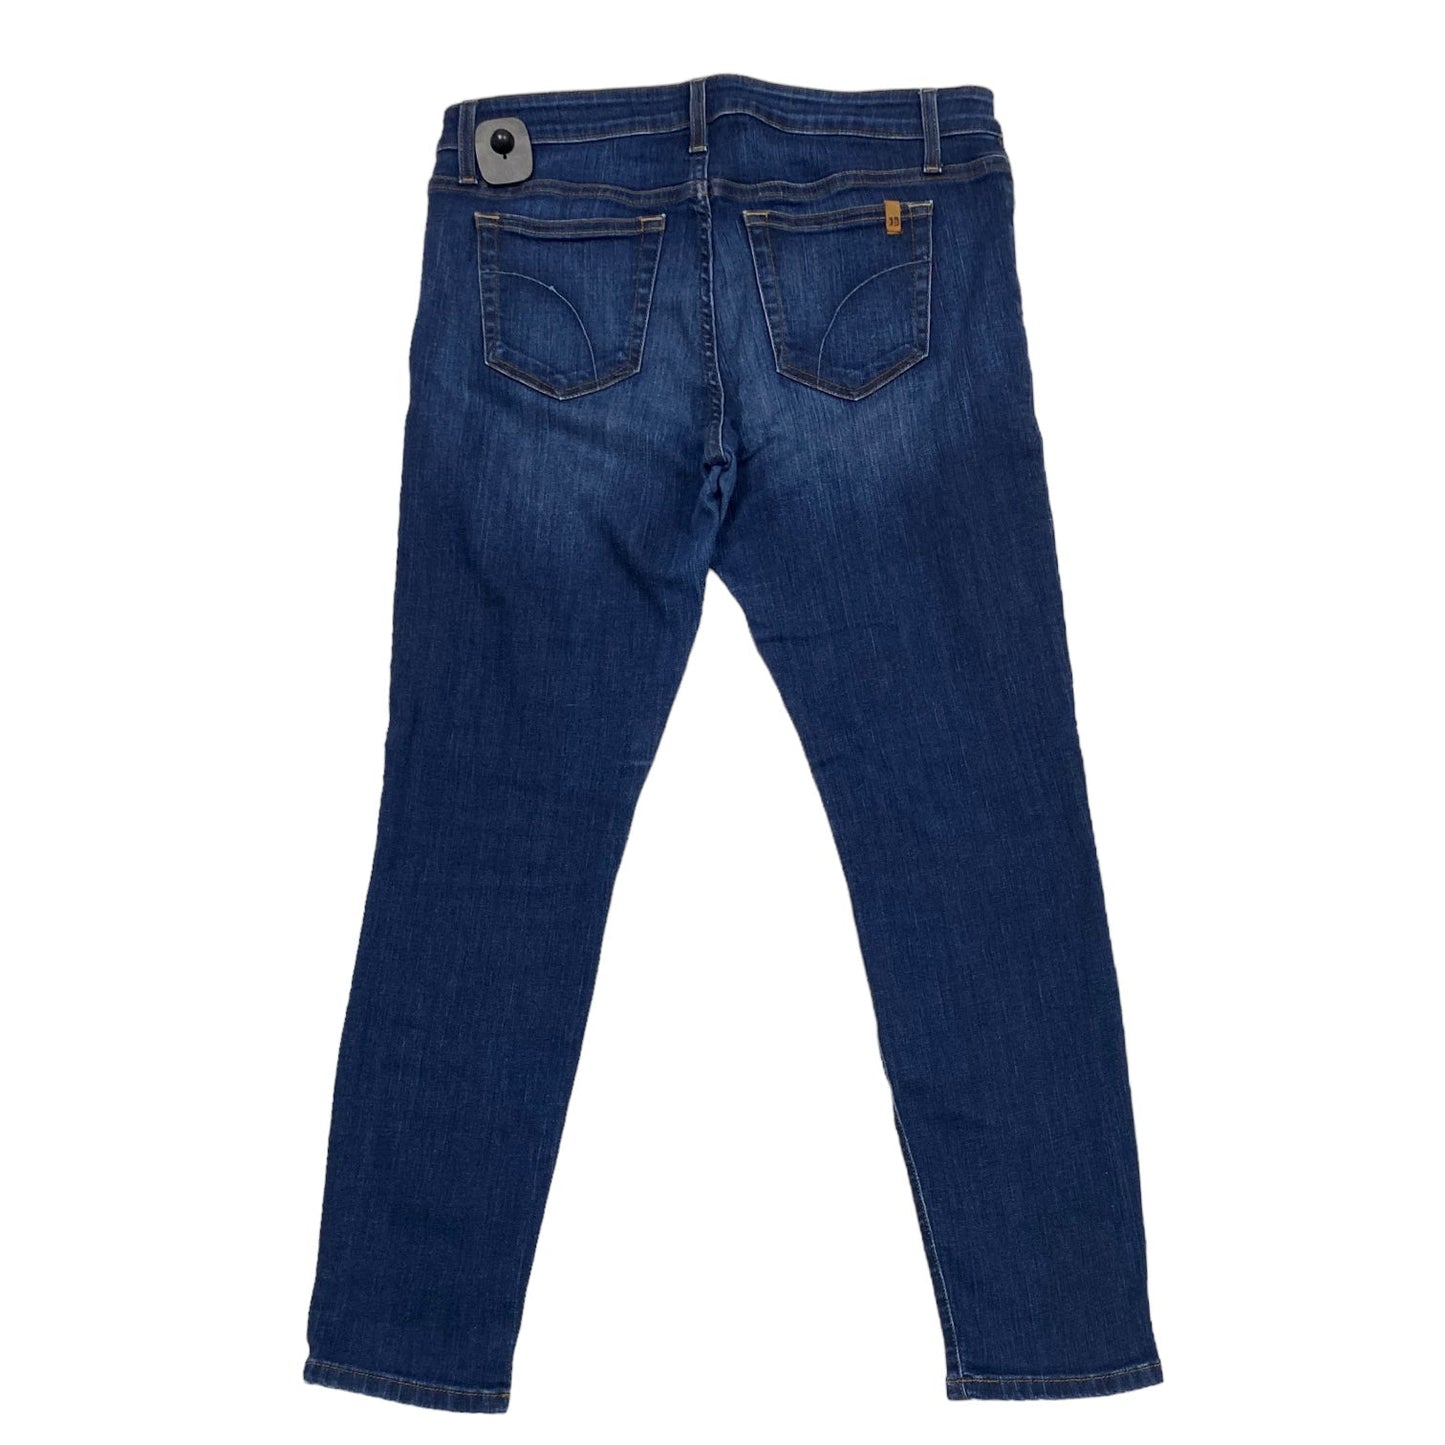 Blue Denim Jeans Boot Cut Joes Jeans, Size 12